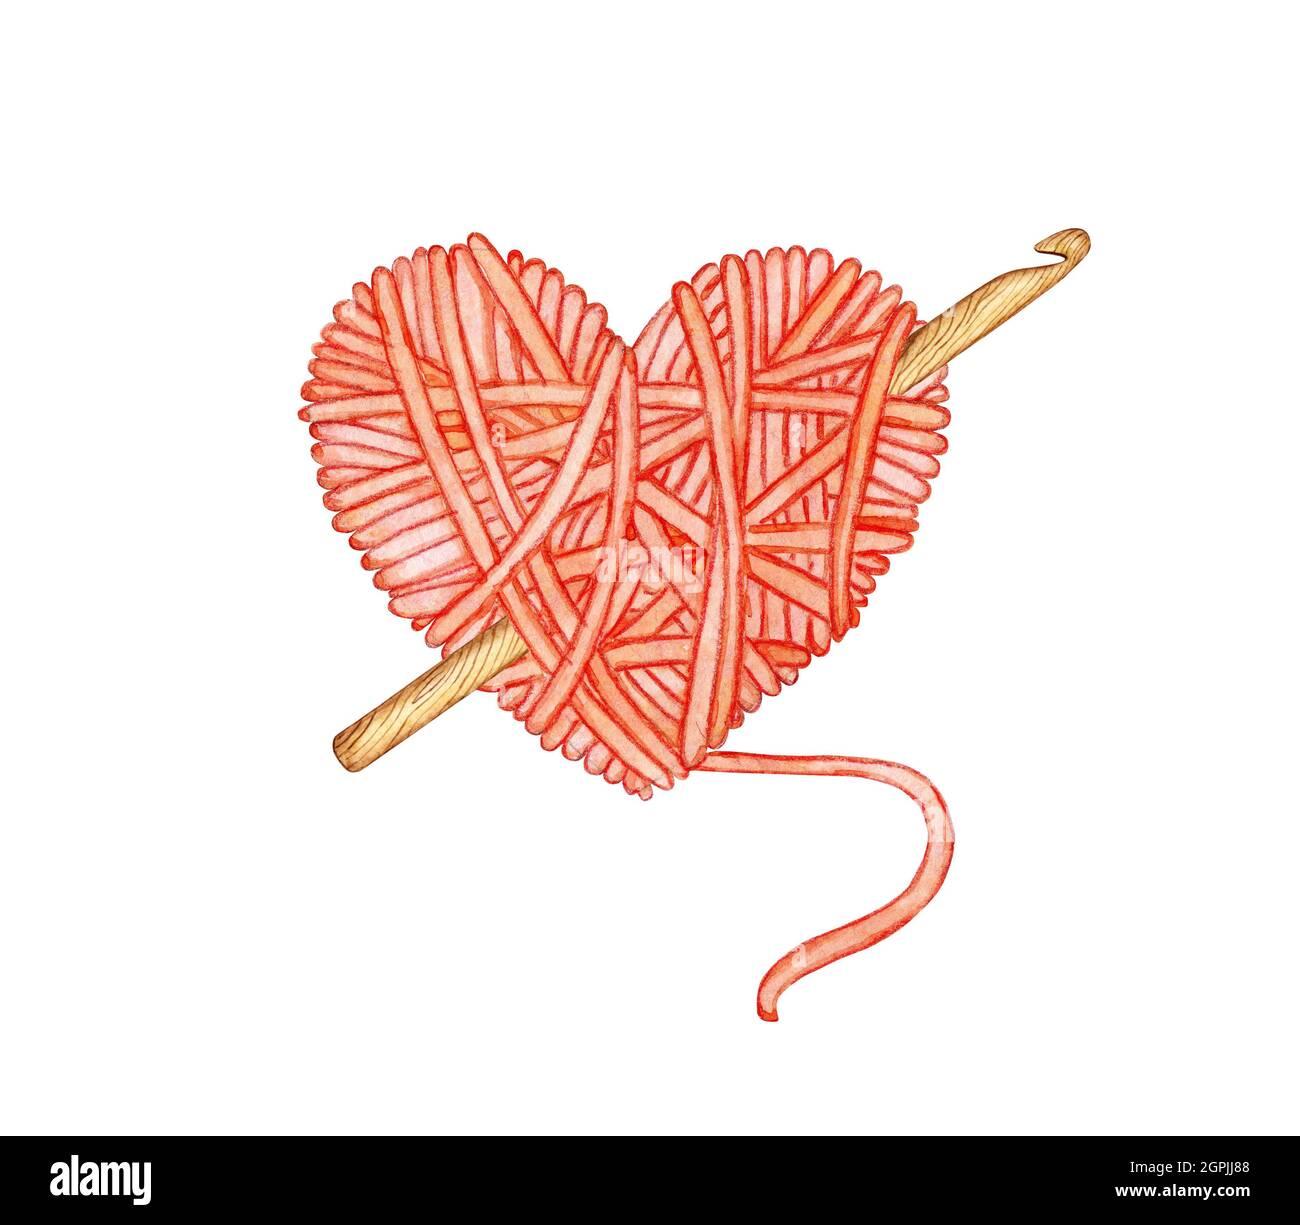 Aquarelle illustration d'une boule rouge de laine en forme de coeur avec un crochet en elle. Amour pour le tricot, la créativité, l'artisanat, le logo, la bannière, d Banque D'Images